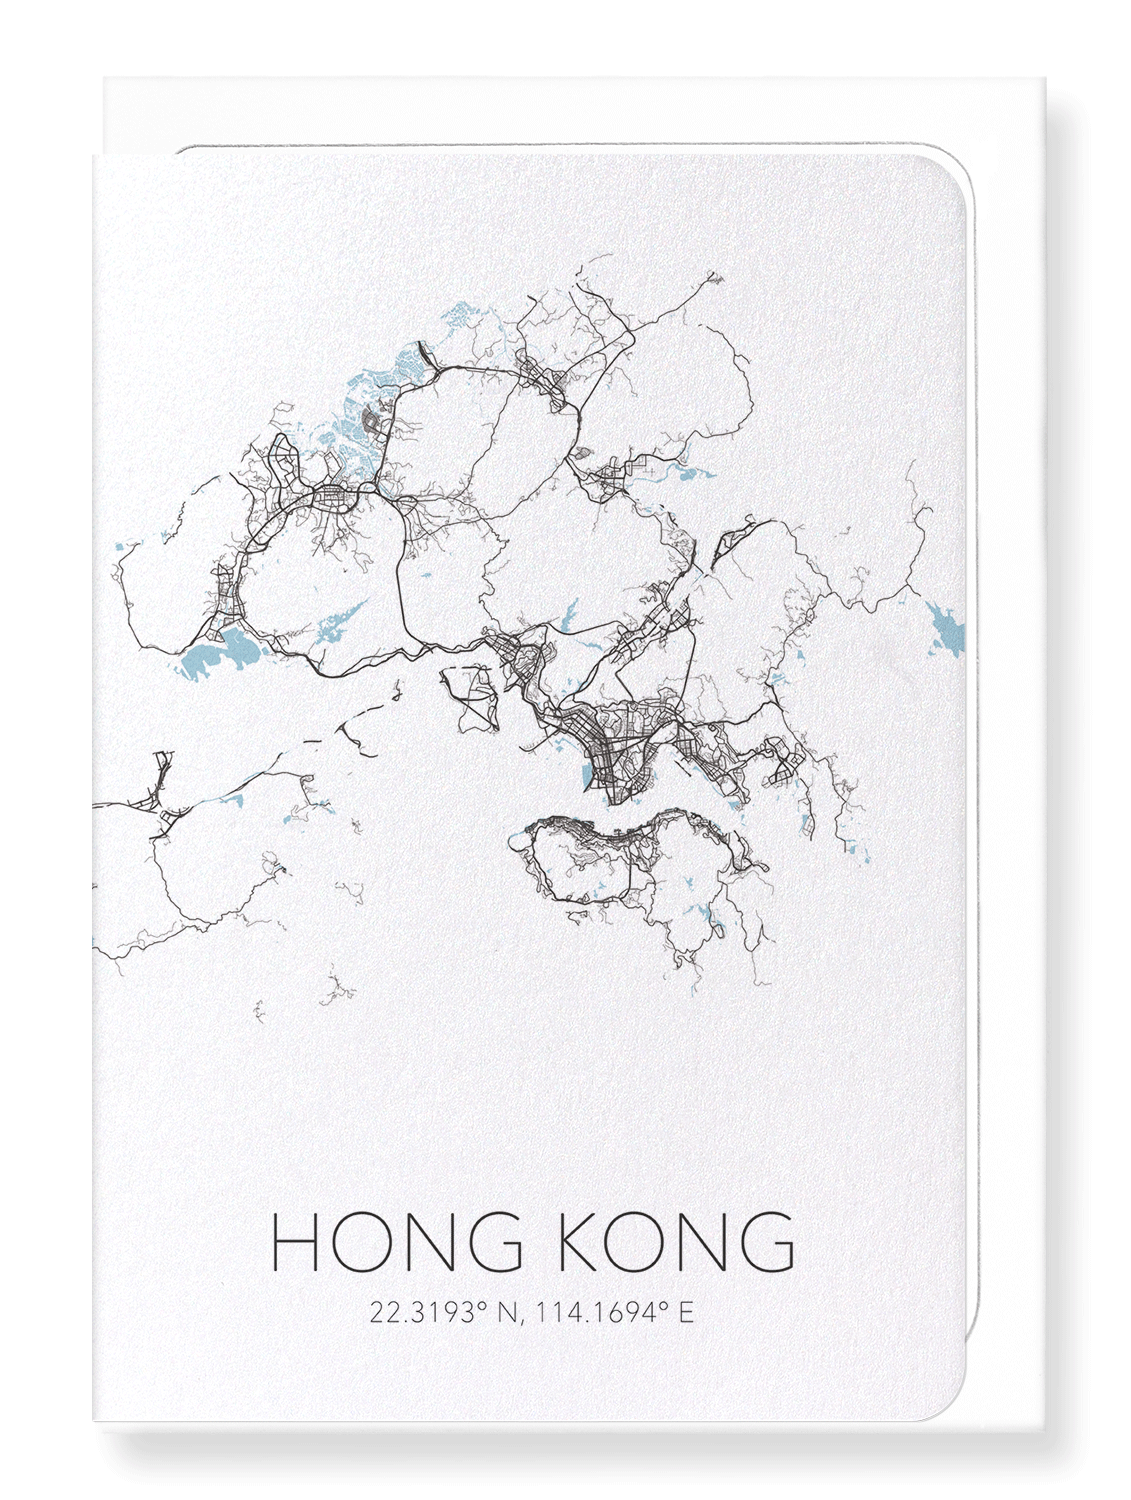 HONG KONG CUTOUT